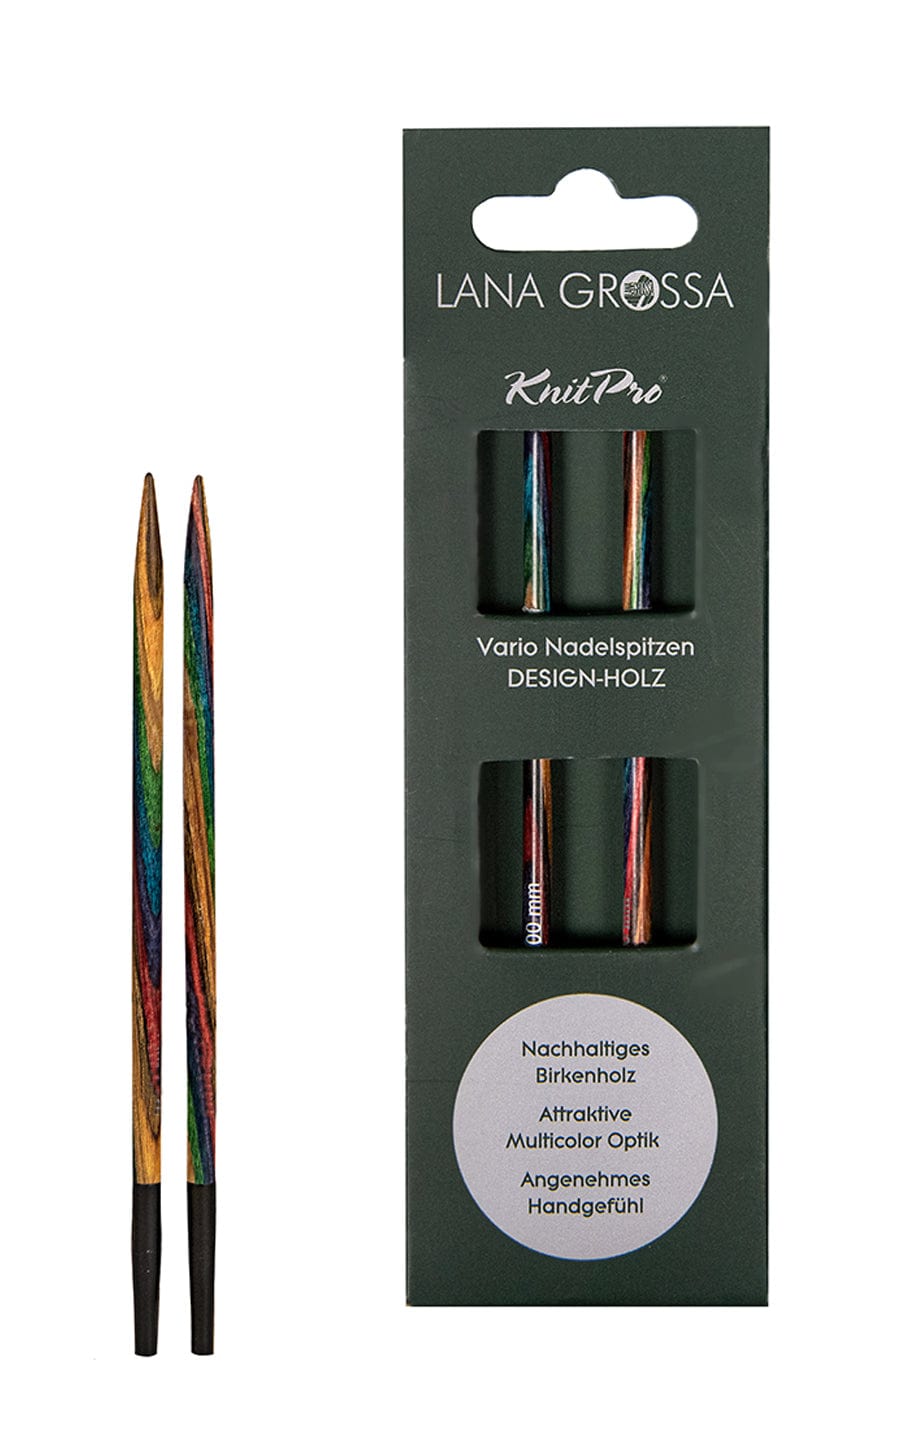 9,0 mm Nadelspitze Vario aus Holz - neue Verpackung von LANA GROSSA jetzt online kaufen bei OONIQUE